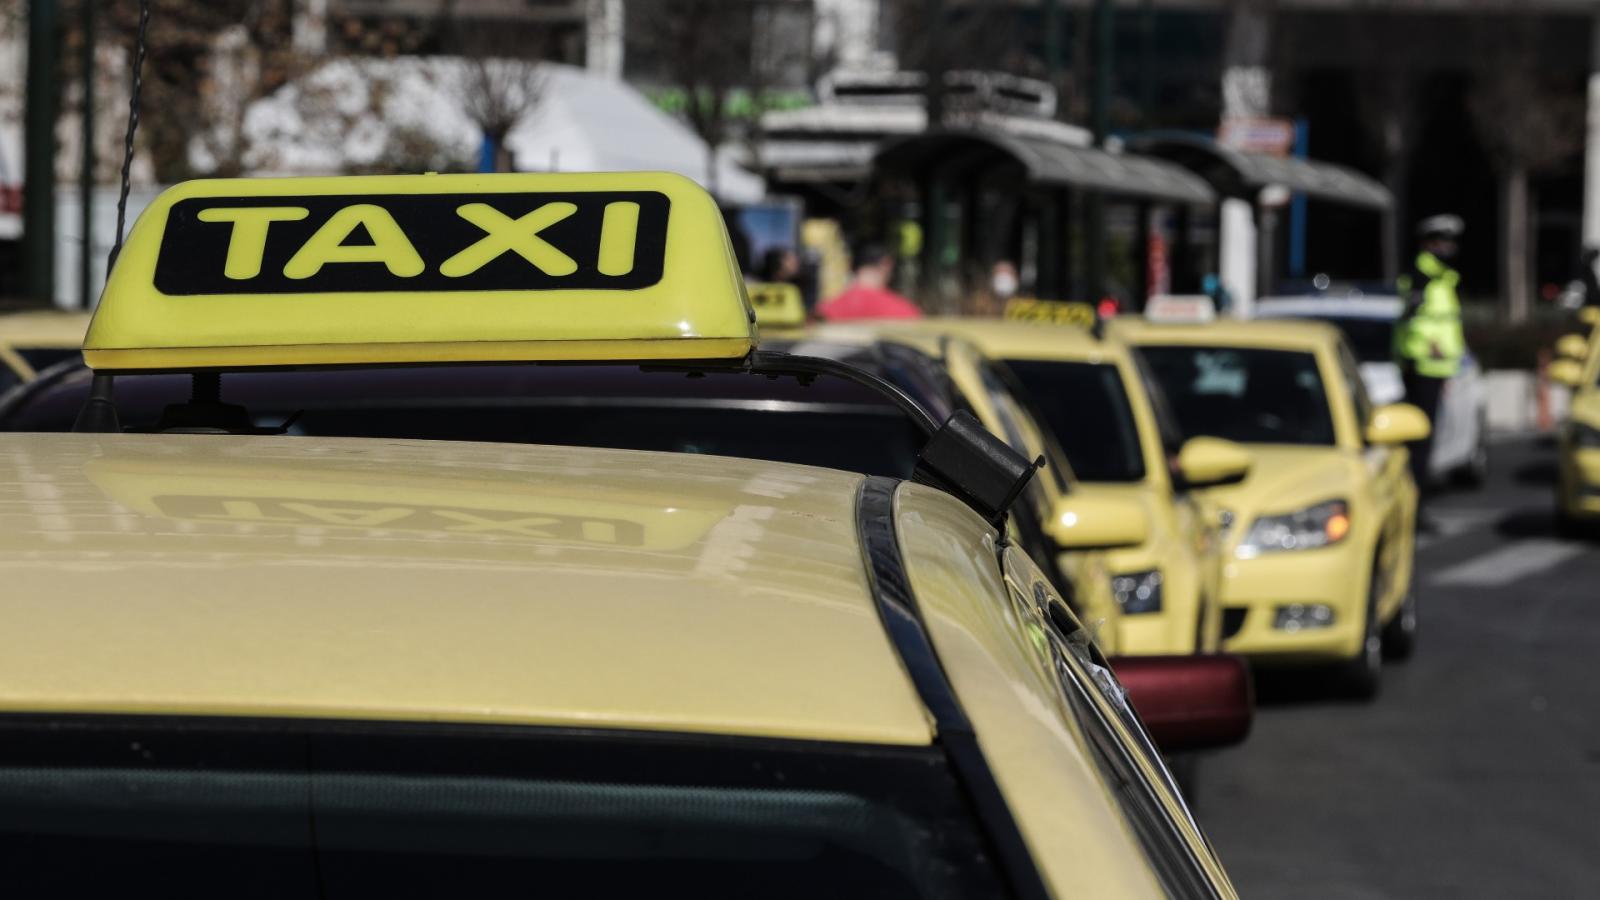 Άγρια καταδίωξη οδηγού ταξί στο κέντρο της Αθήνας – Αρνήθηκε να υποβληθεί σε τροχονομικό έλεγχο